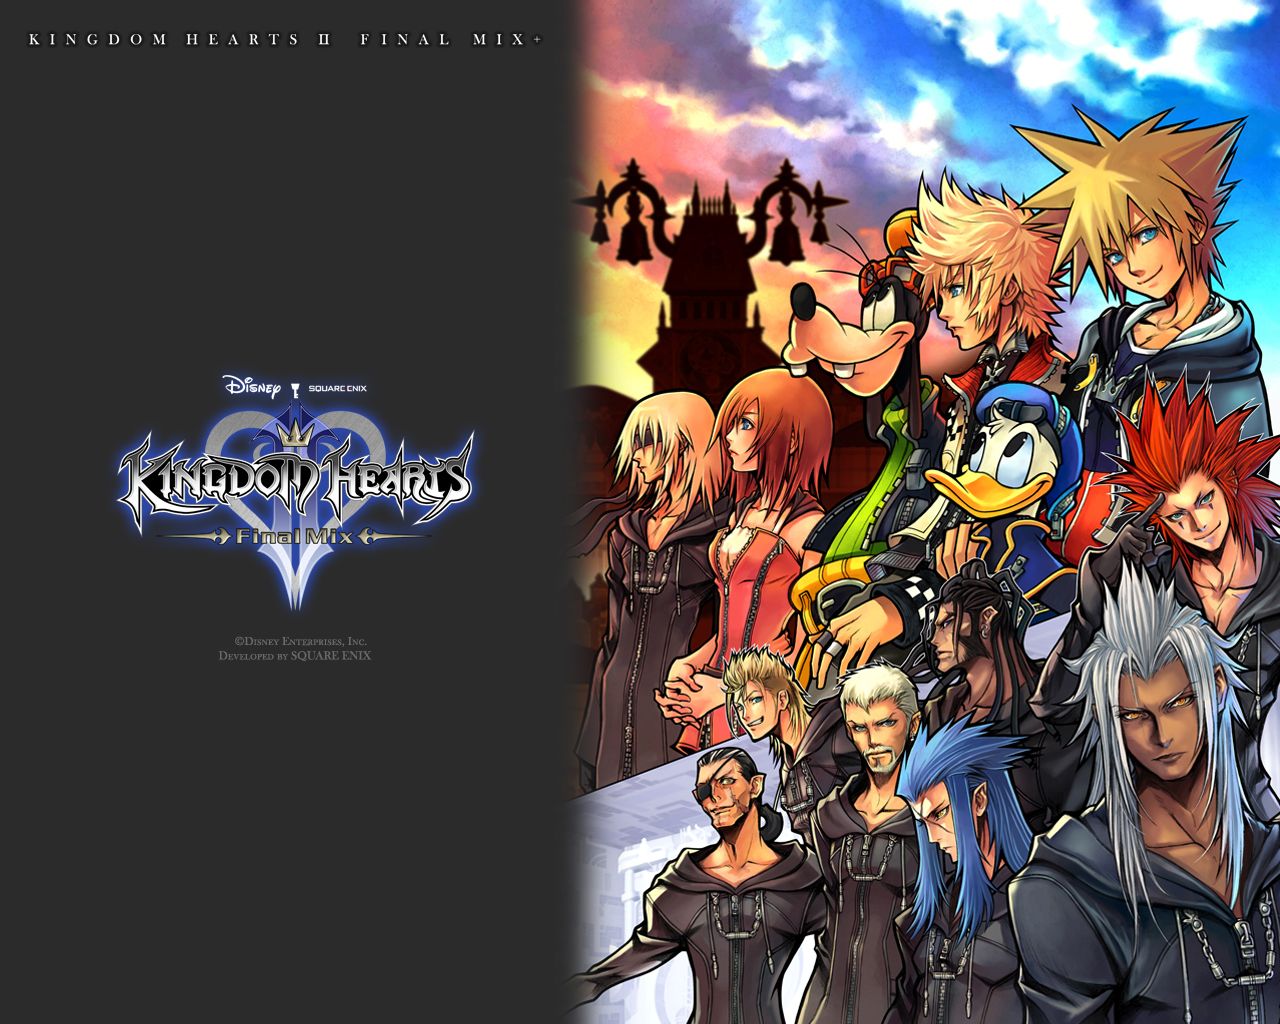 Fond Ecran Wallpaper Kingdom Hearts Final Mix Jeuxvideo Fr